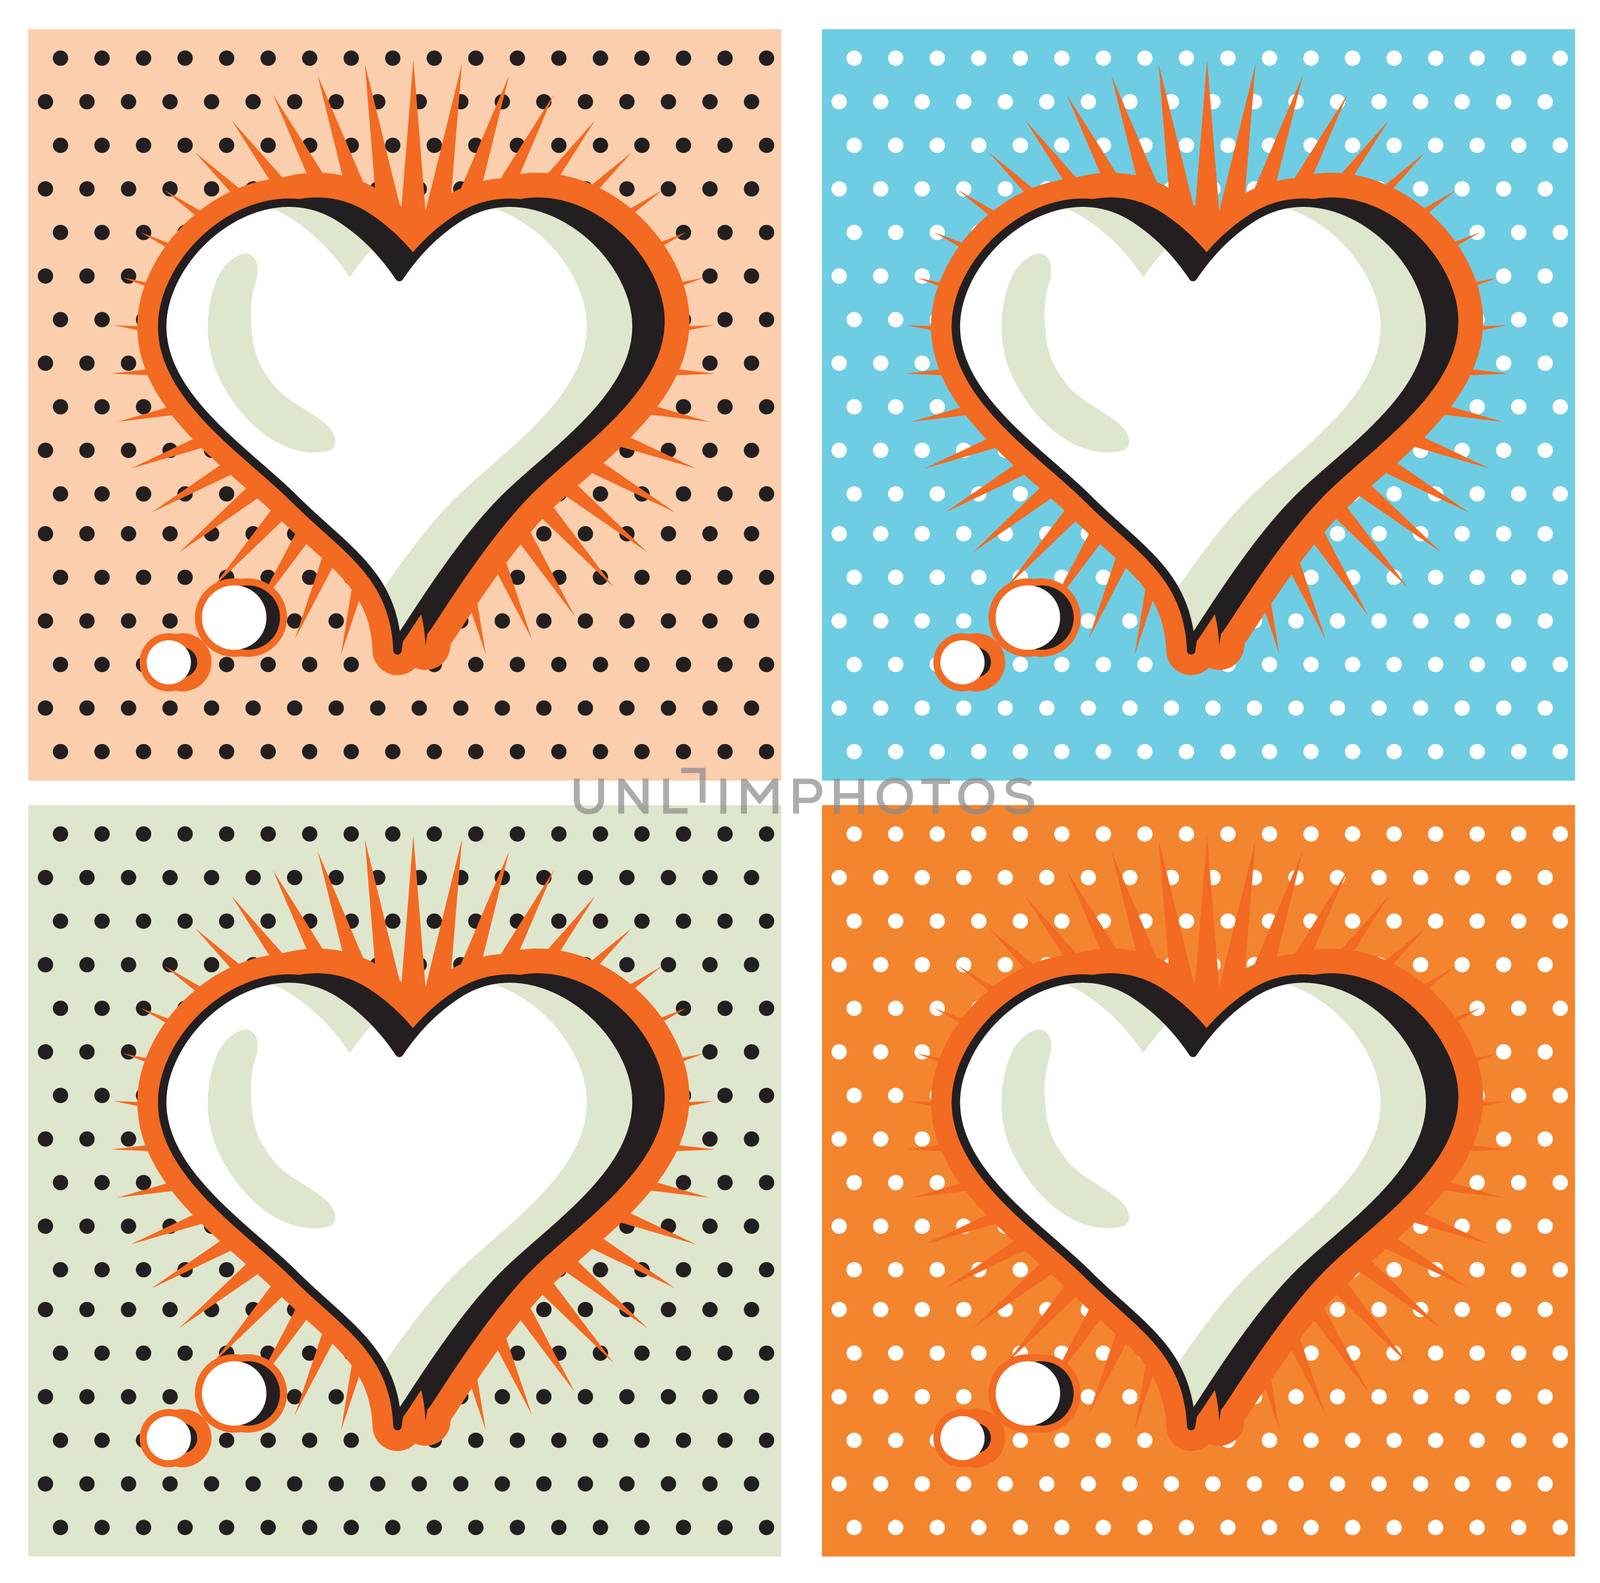 Speech Bubble Love Heart in Pop-Art Style cards set by tamaravector